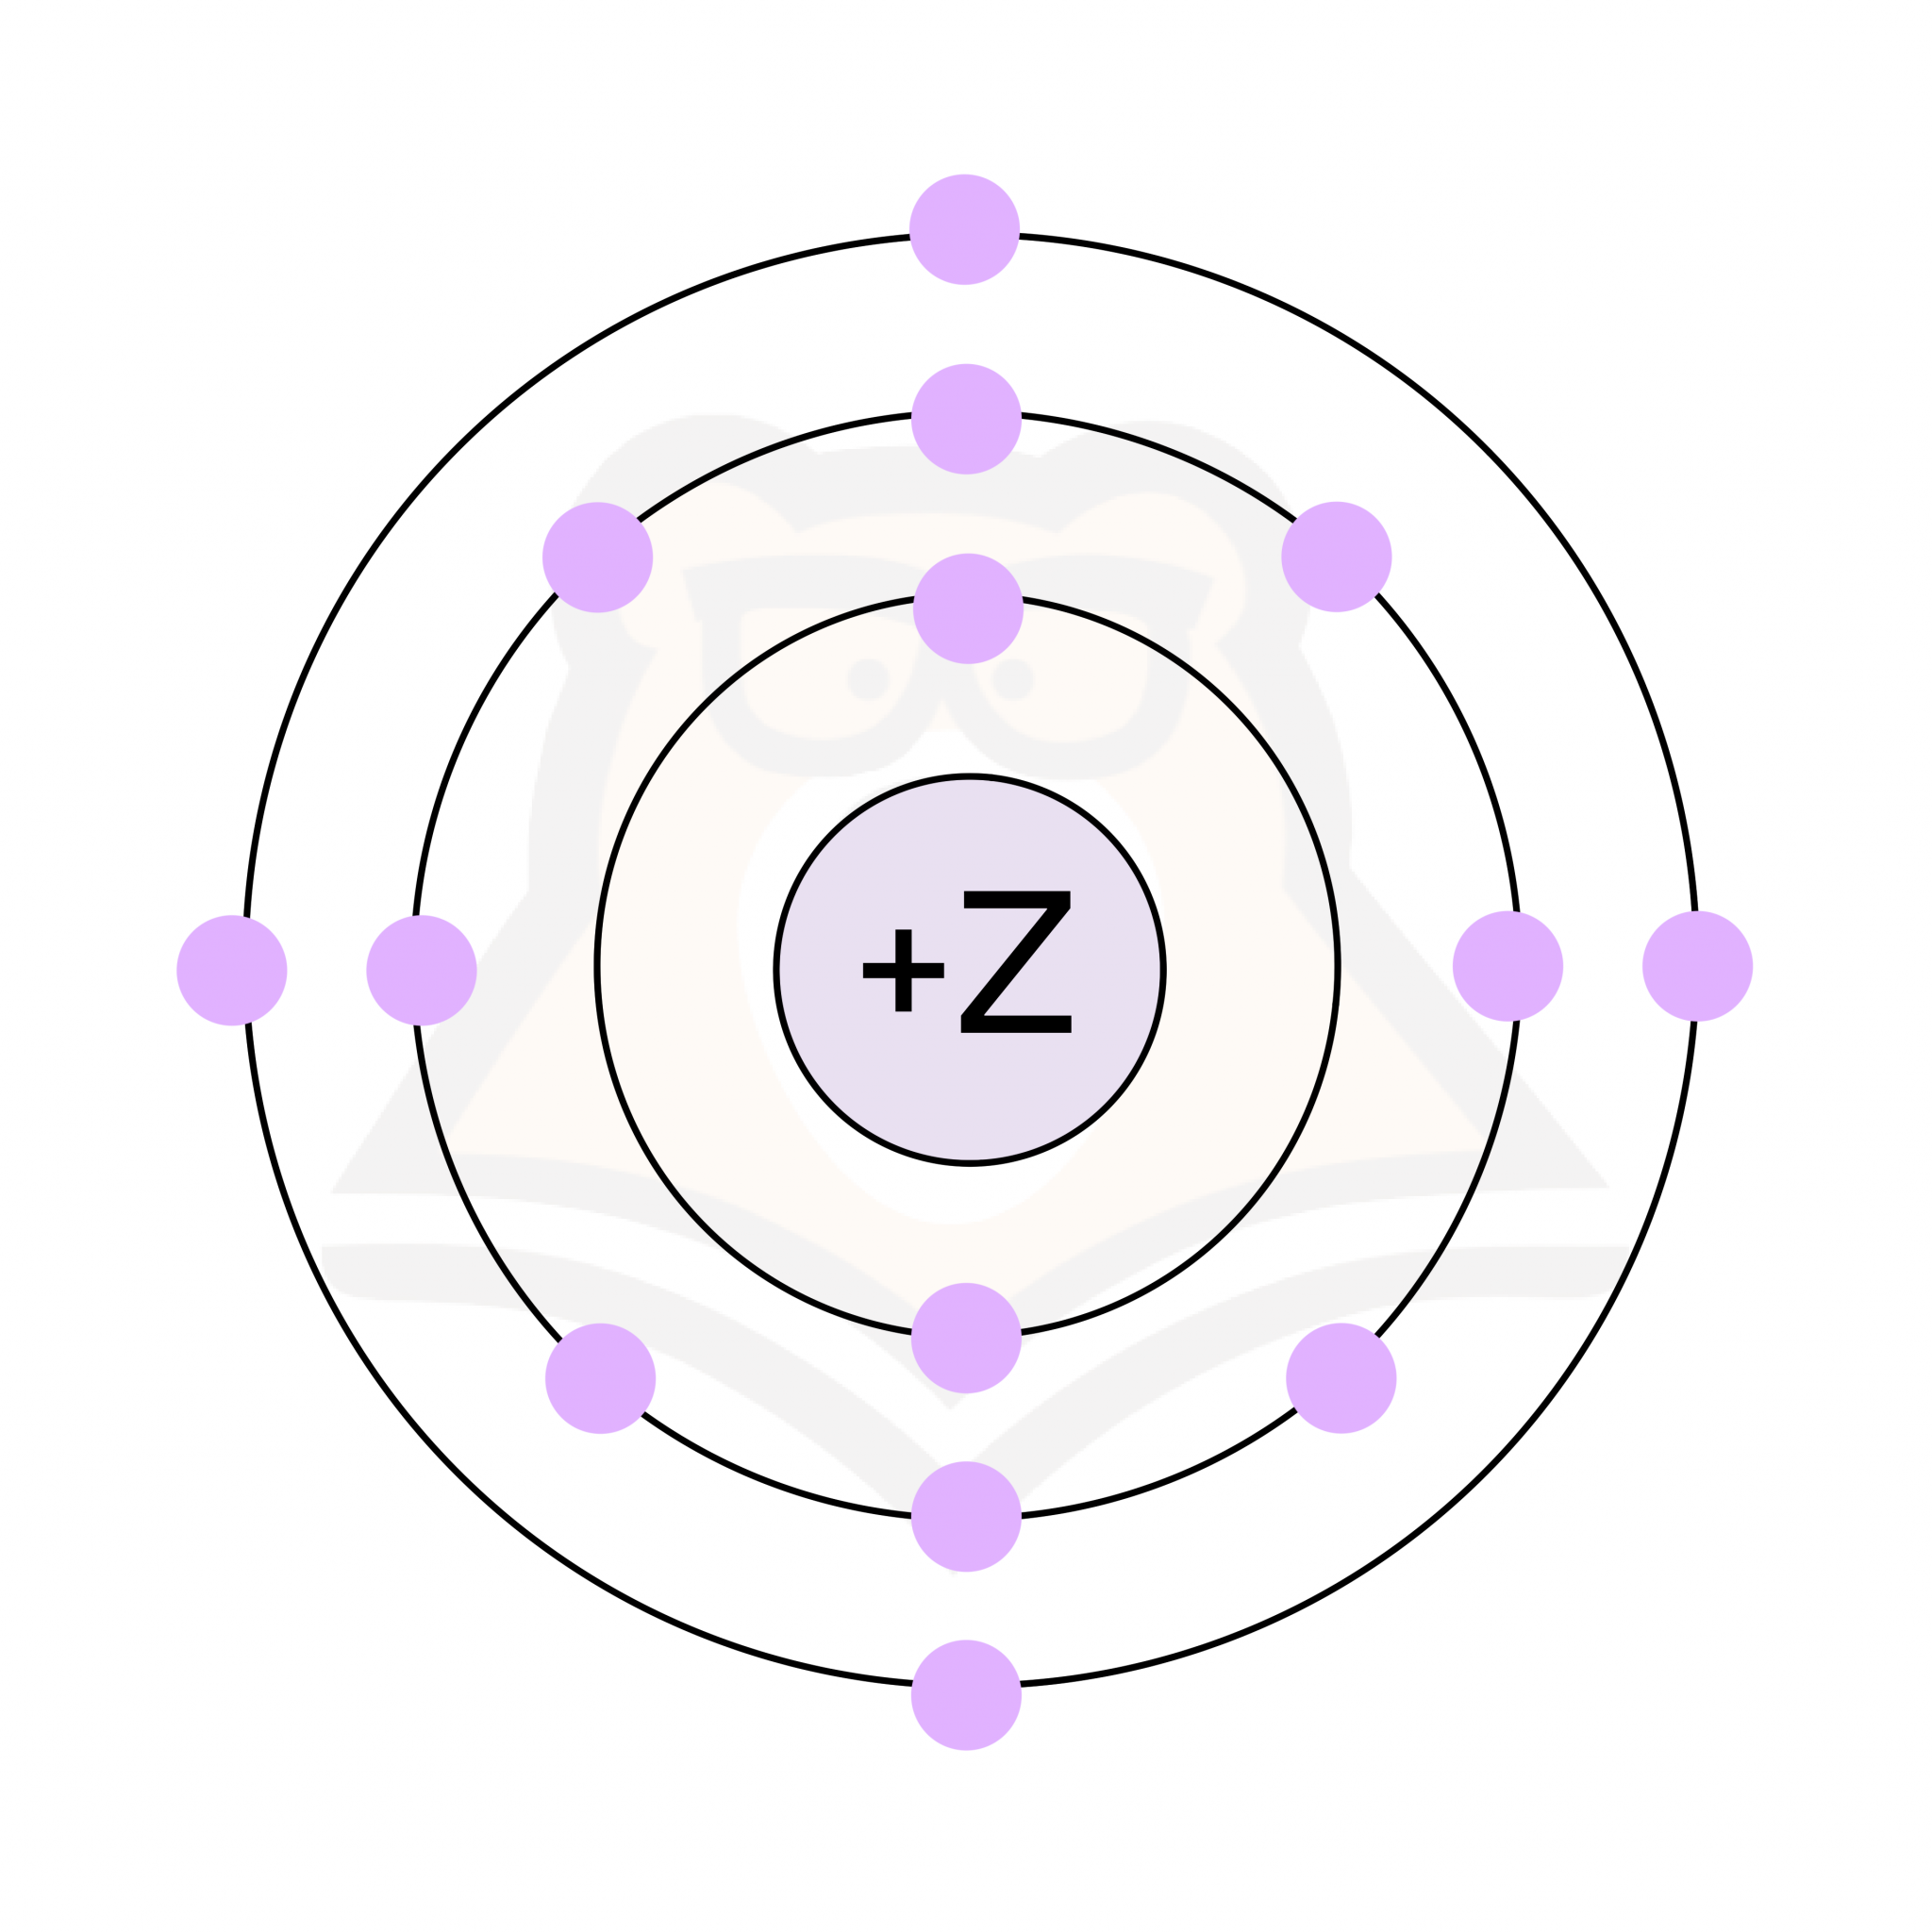 В атоме элемента 15 электронов. Модель атома азота рисунок. На приведённом рисунке изображена модель атома химического элемента. Модель атома хлора. Модель атома лития рисунок.